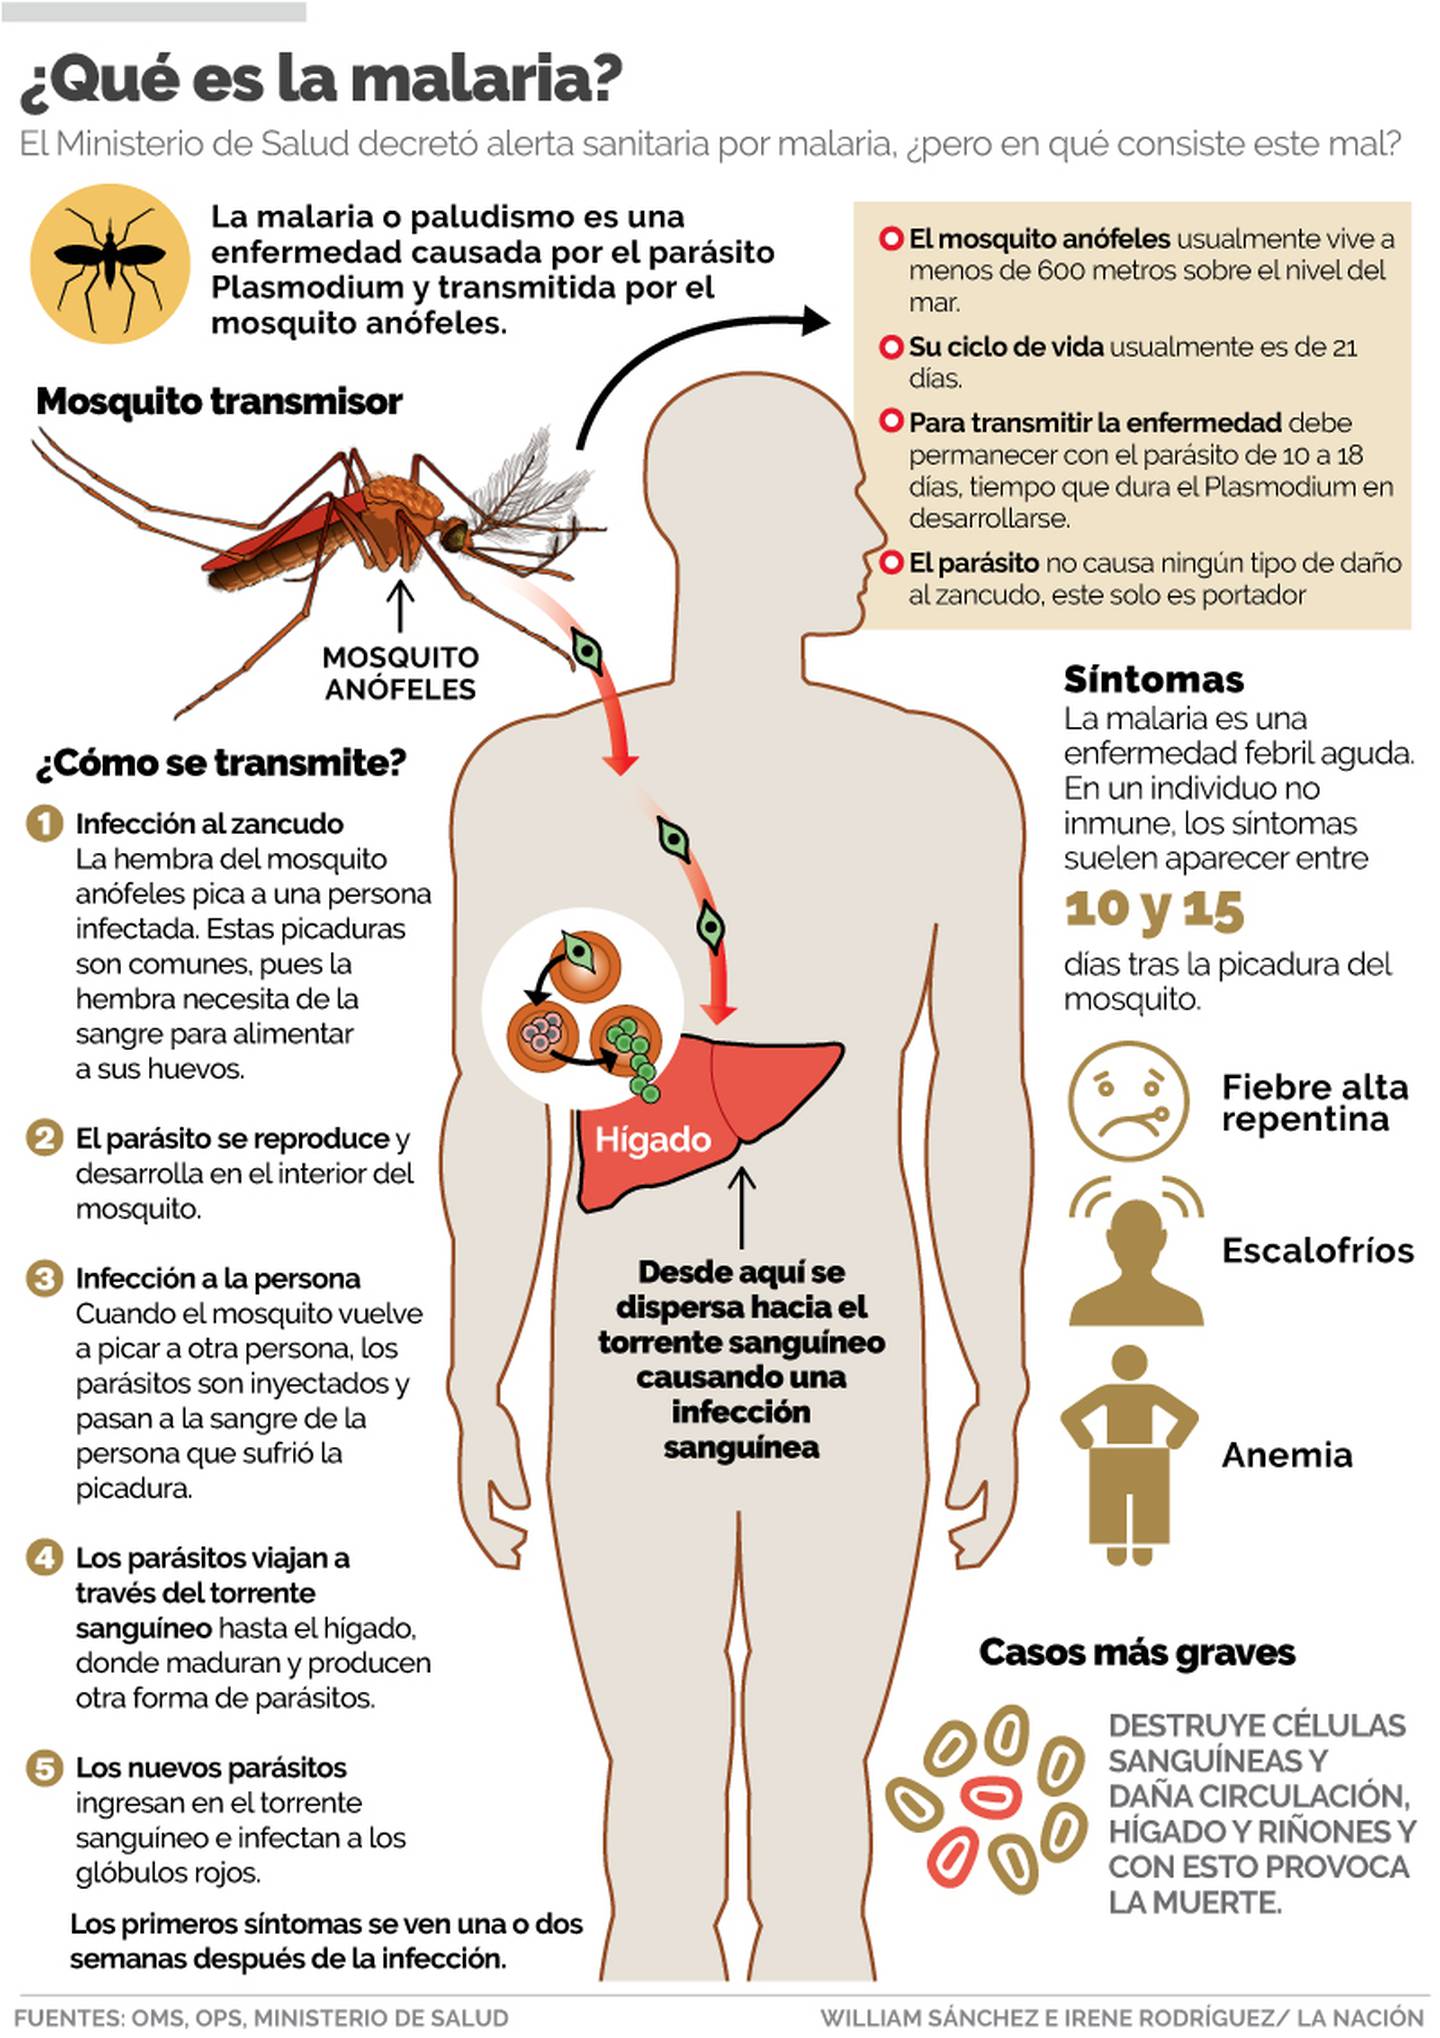 Costa Rica está en alerta sanitaria por malaria | La Nación